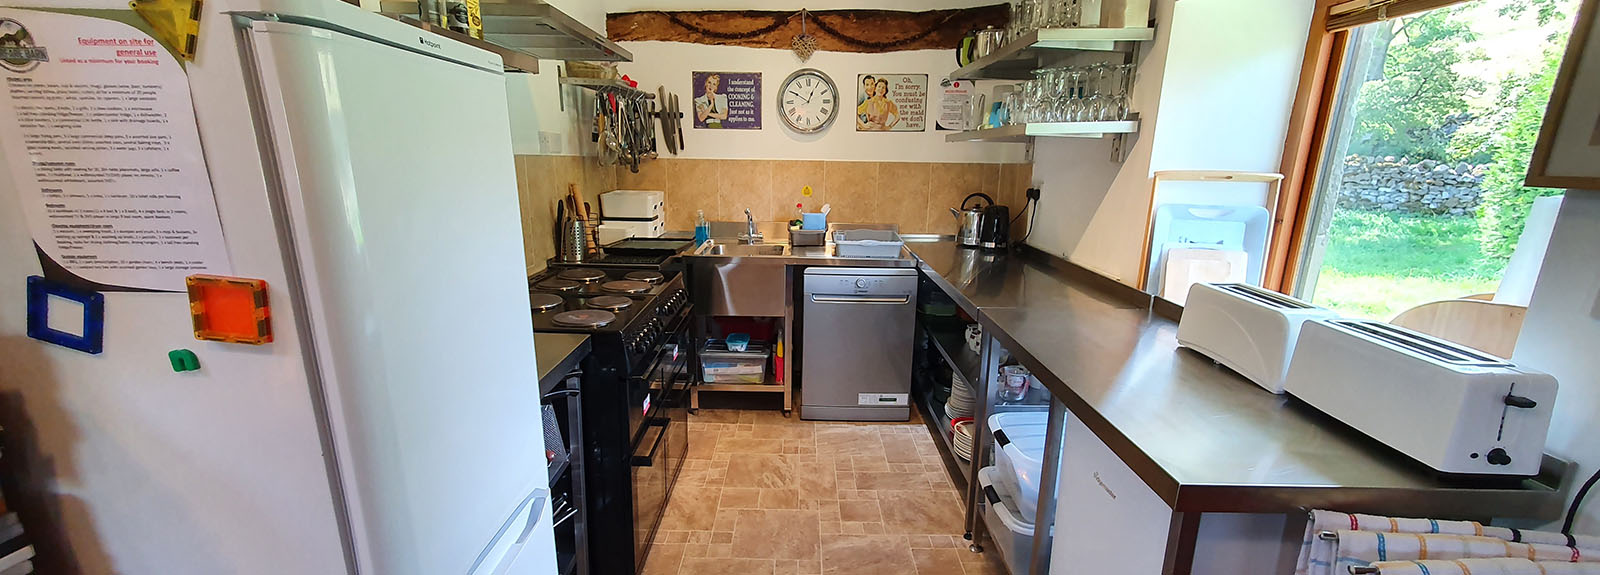 kitchen16001.jpg